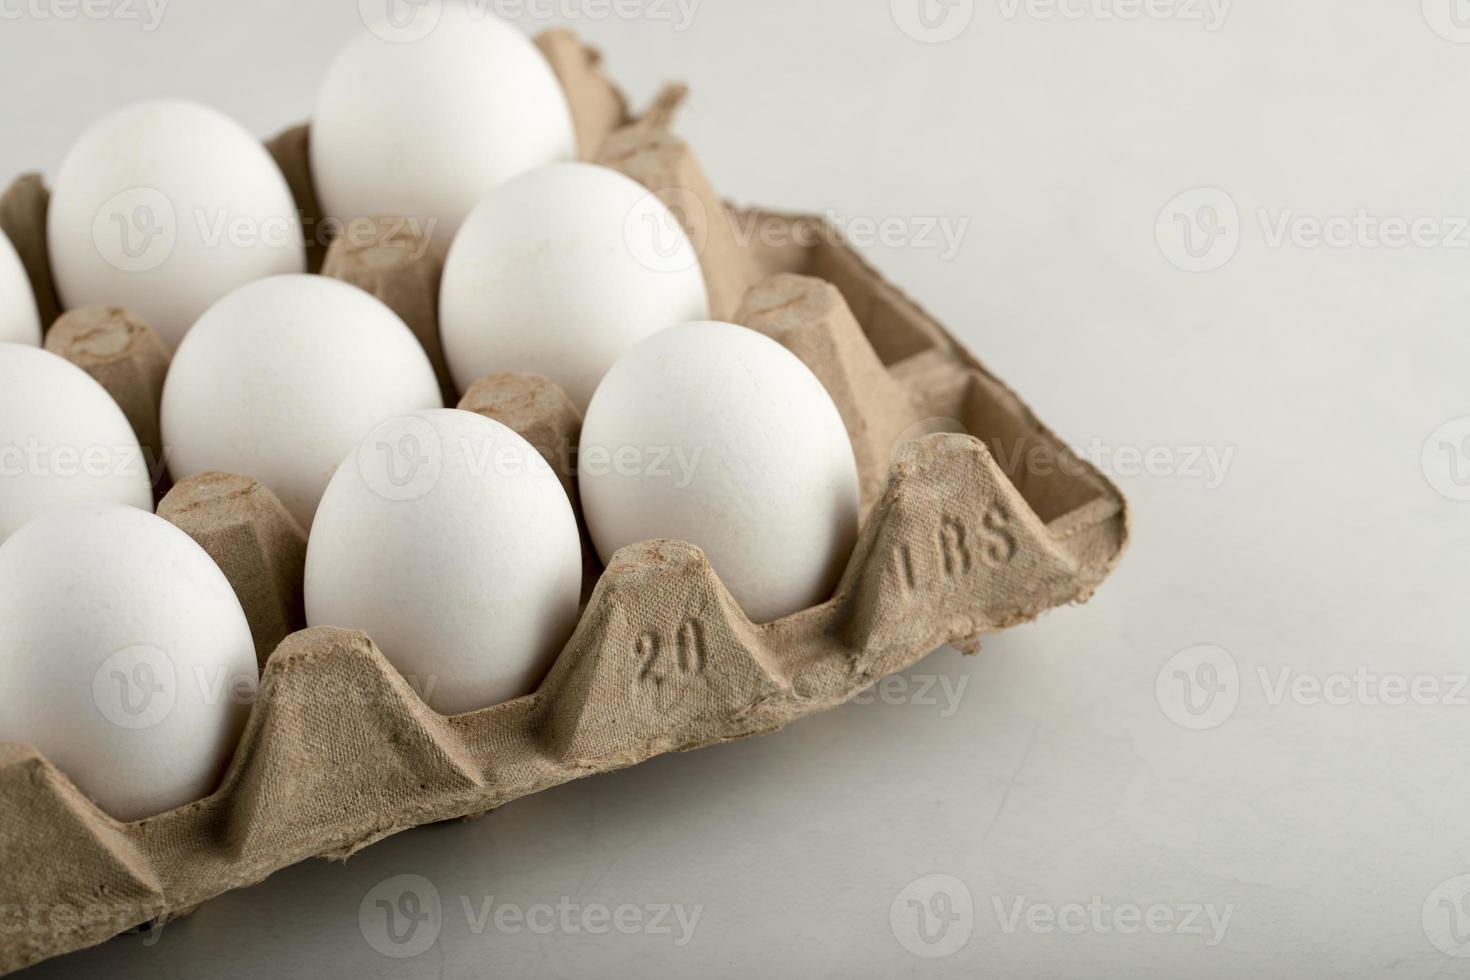 ovos de galinha crus em uma caixa de ovos em um fundo branco foto